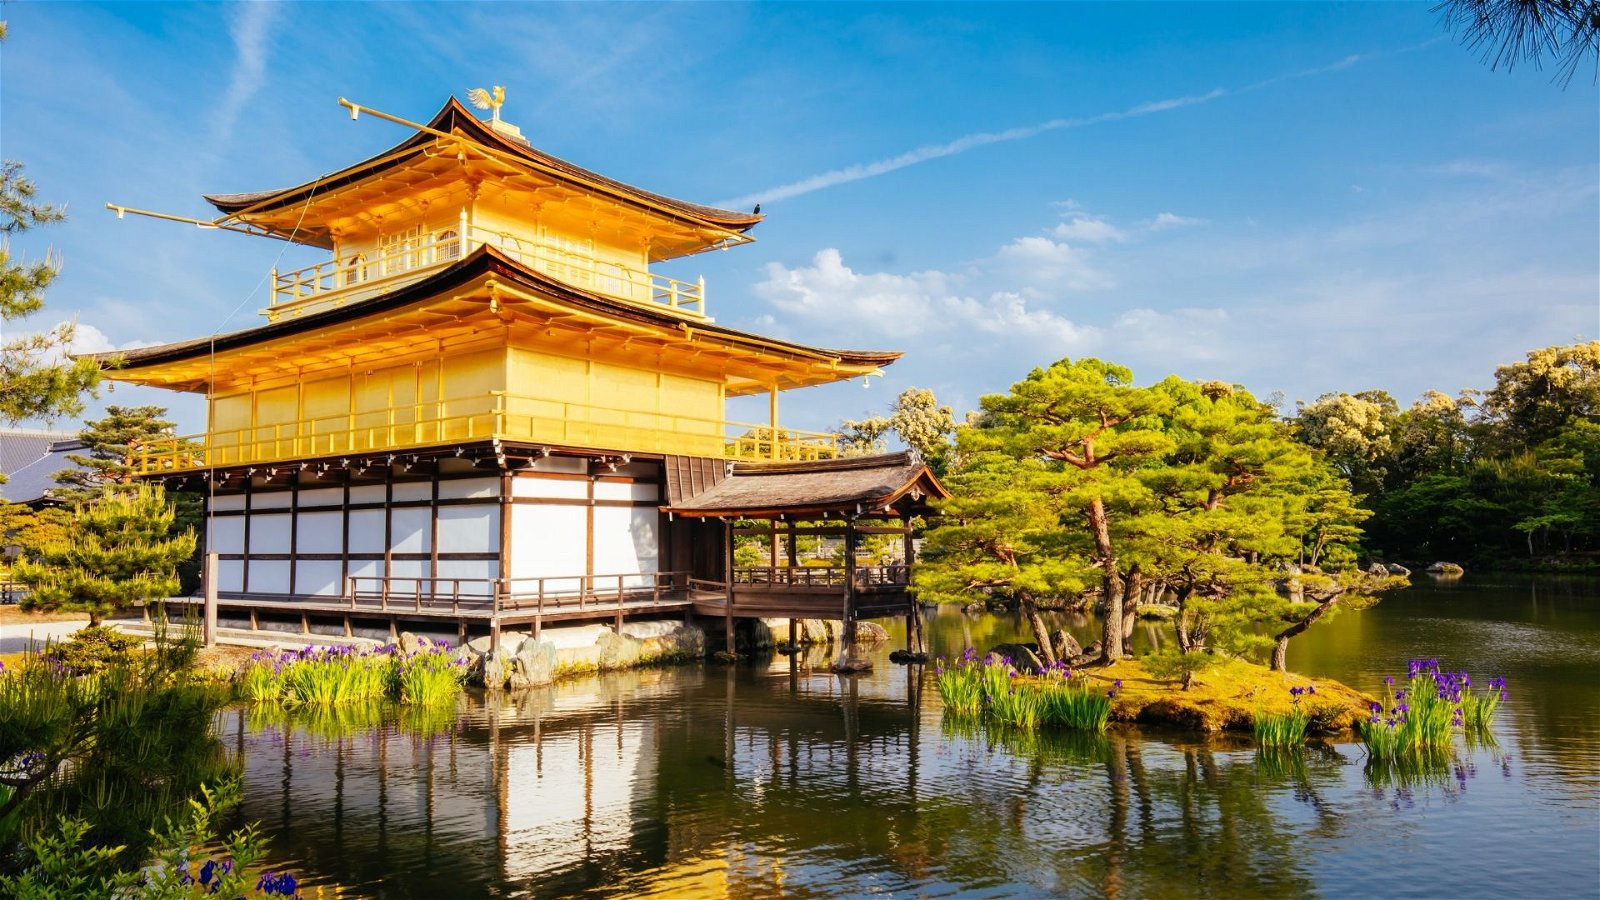 ทัวร์ญี่ปุ่น โอซาก้า ยอดขายอันดับ 1 | Mushroom Travel